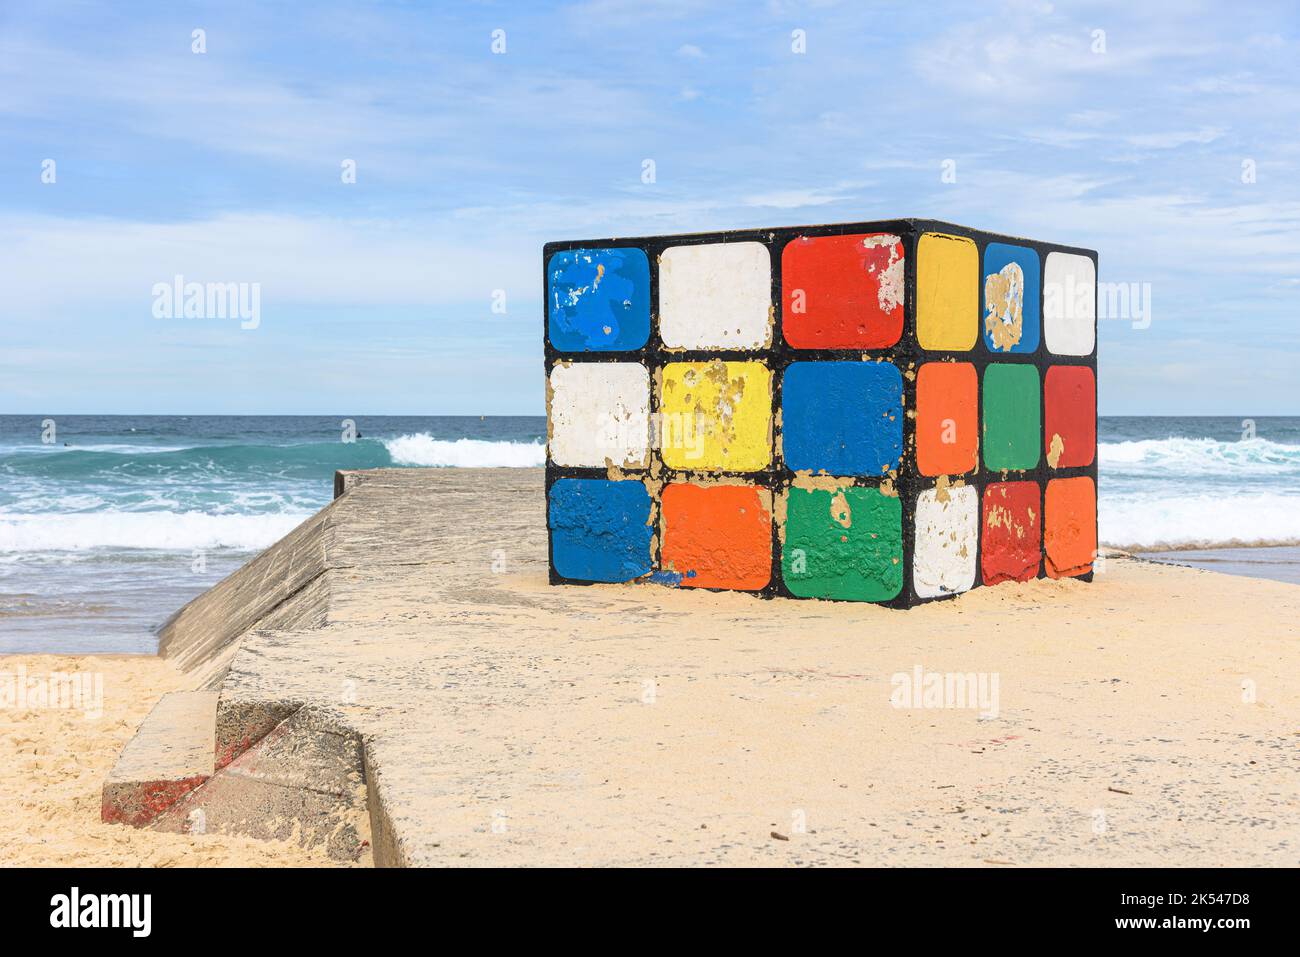 Le Big Rubik's Cube sur Maroubra Beach, Sydney, Australie Banque D'Images